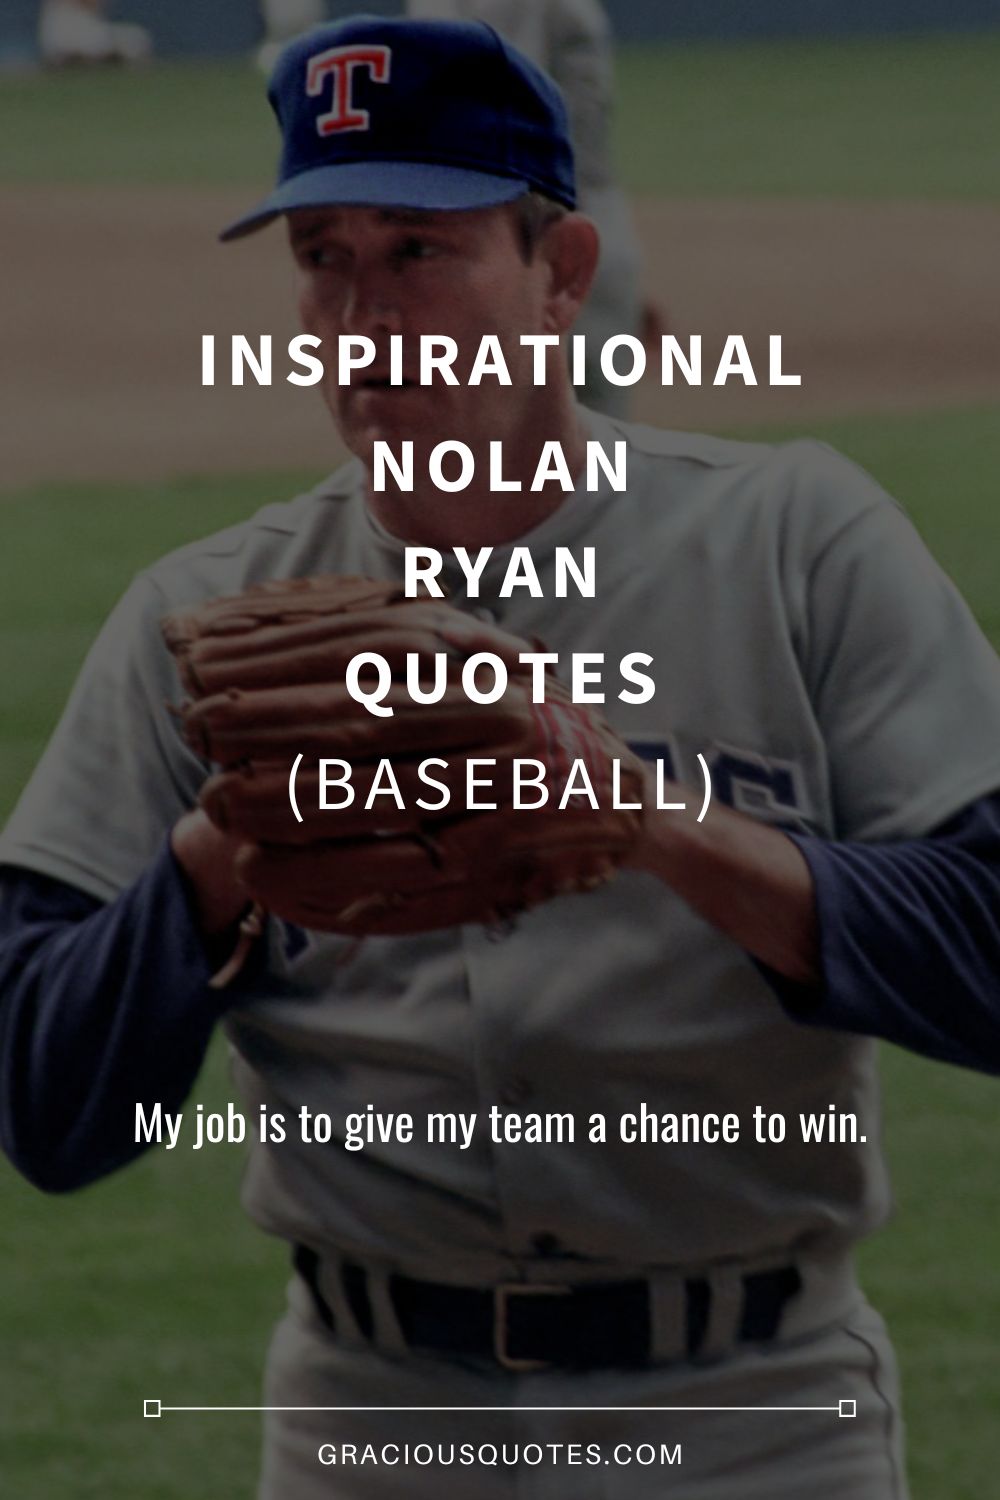 Inspirational Nolan Ryan Quotes (BASEBALL) - Gracious Quotes